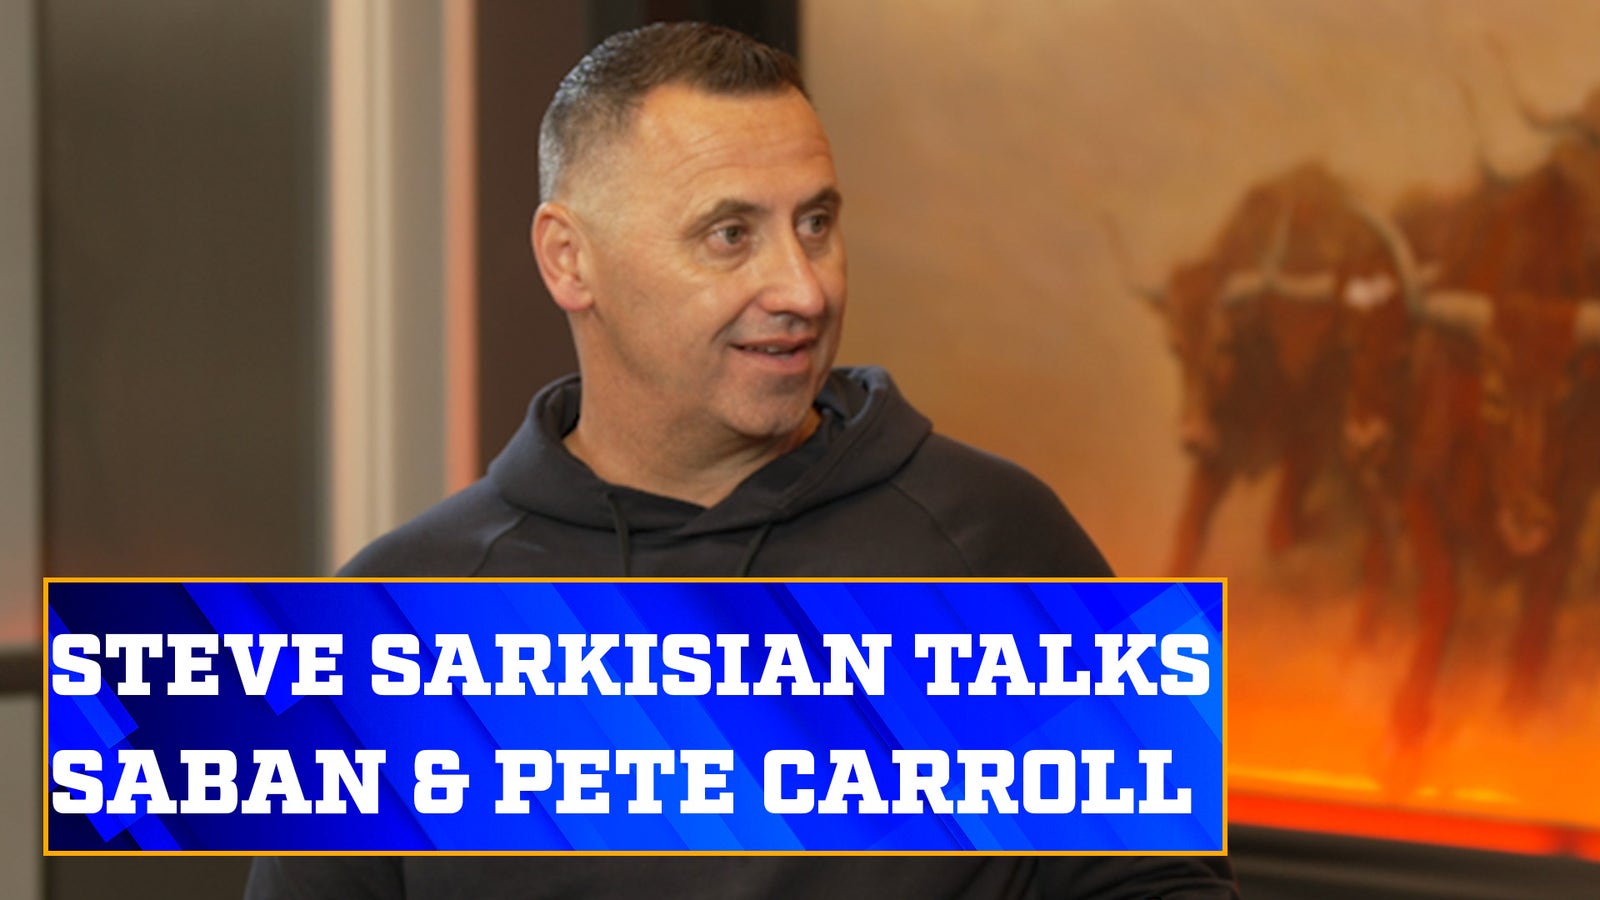 Steve Sarkisian membahas bagaimana kepelatihan di bawah bimbingan Nick Saban dan Pete Carroll memengaruhi kariernya 